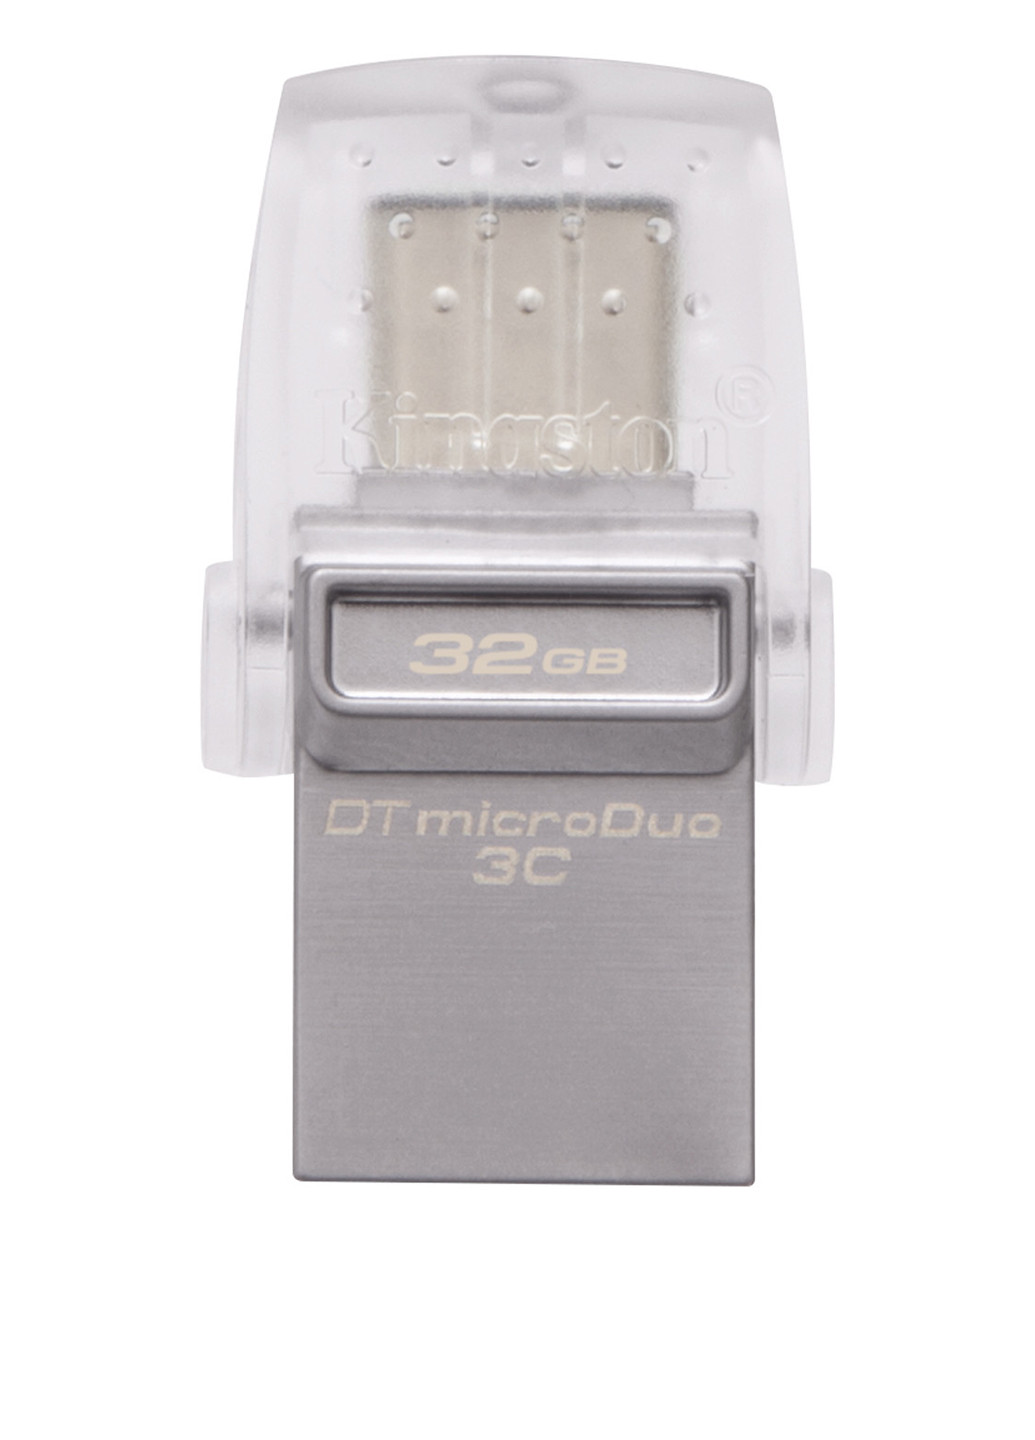 Флеш память USB DataTraveler microDuo 3C 32GB (DTDUO3C/32GB) Kingston Флеш память USB Kingston DataTraveler microDuo 3C 32GB (DTDUO3C/32GB) серебристые